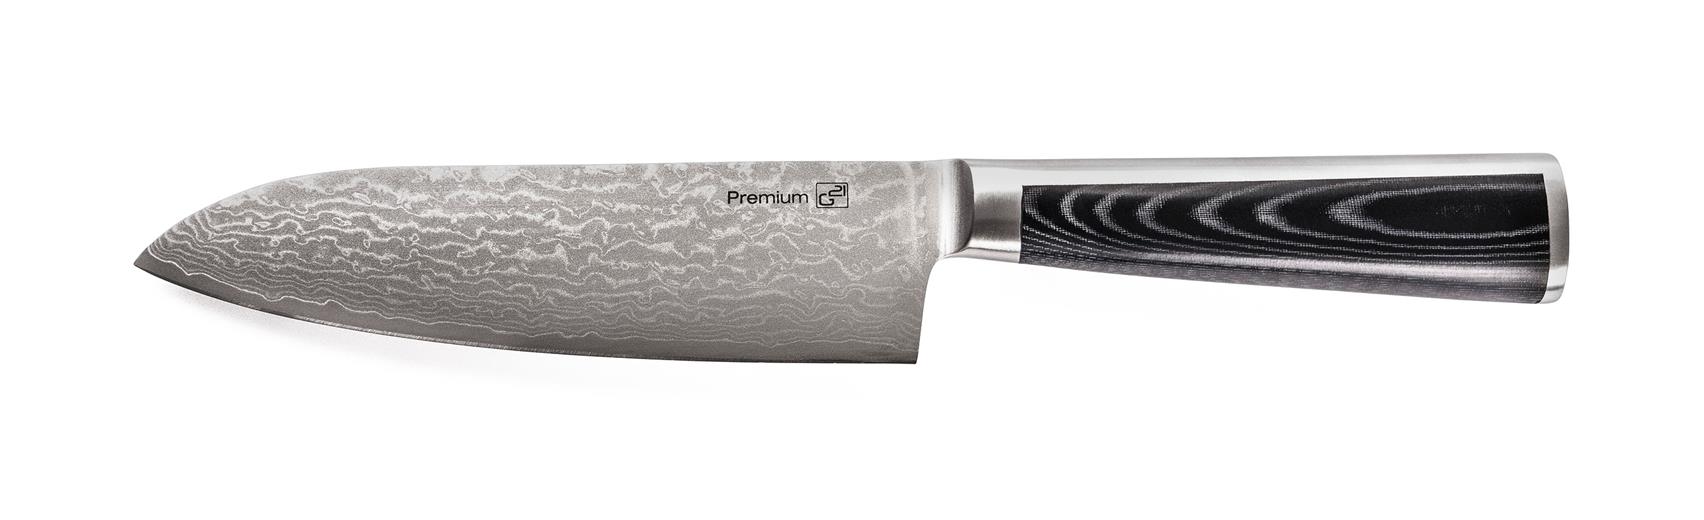 G21 Nůž Damascus Premium 17 cm, Santoku G21-DMSP-SNTK17